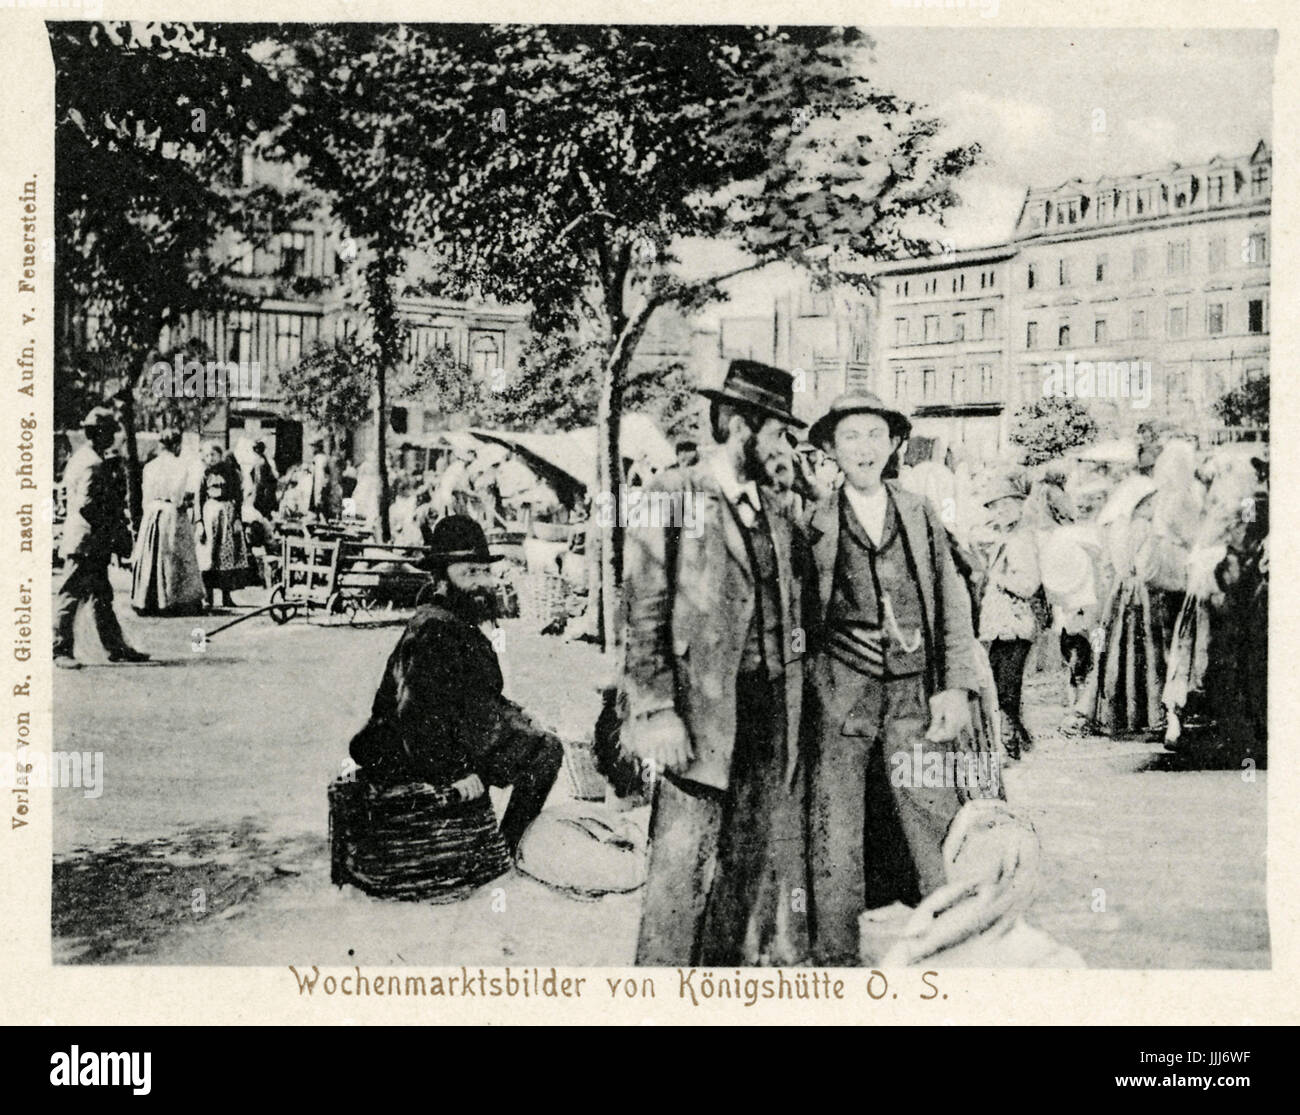 Chorzow (Konigshutte) Jews in weekly market . Early 20th century. Caption reads:  Wochenmartsbilder von Konigshutte. Southern Poland. Photograph by Feuerstein. Stock Photo